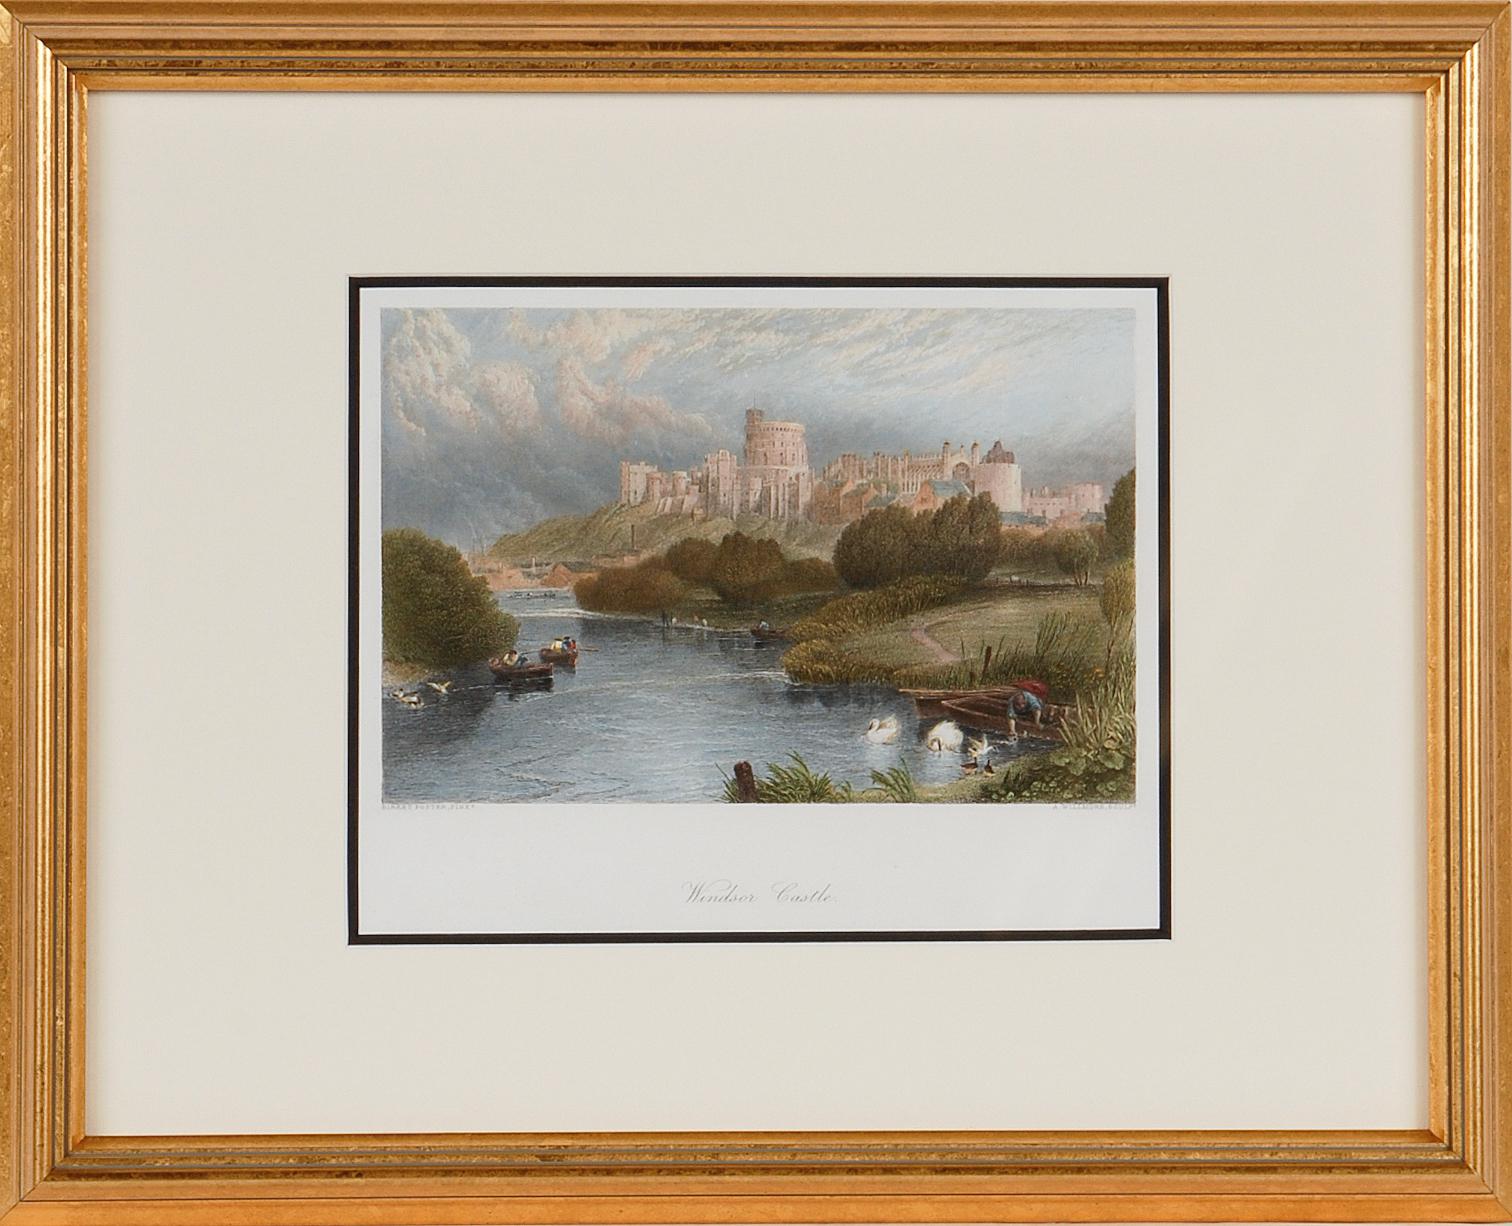 Windsor Castle: A Framed 19th C. Engraving After Myles Birket Foster